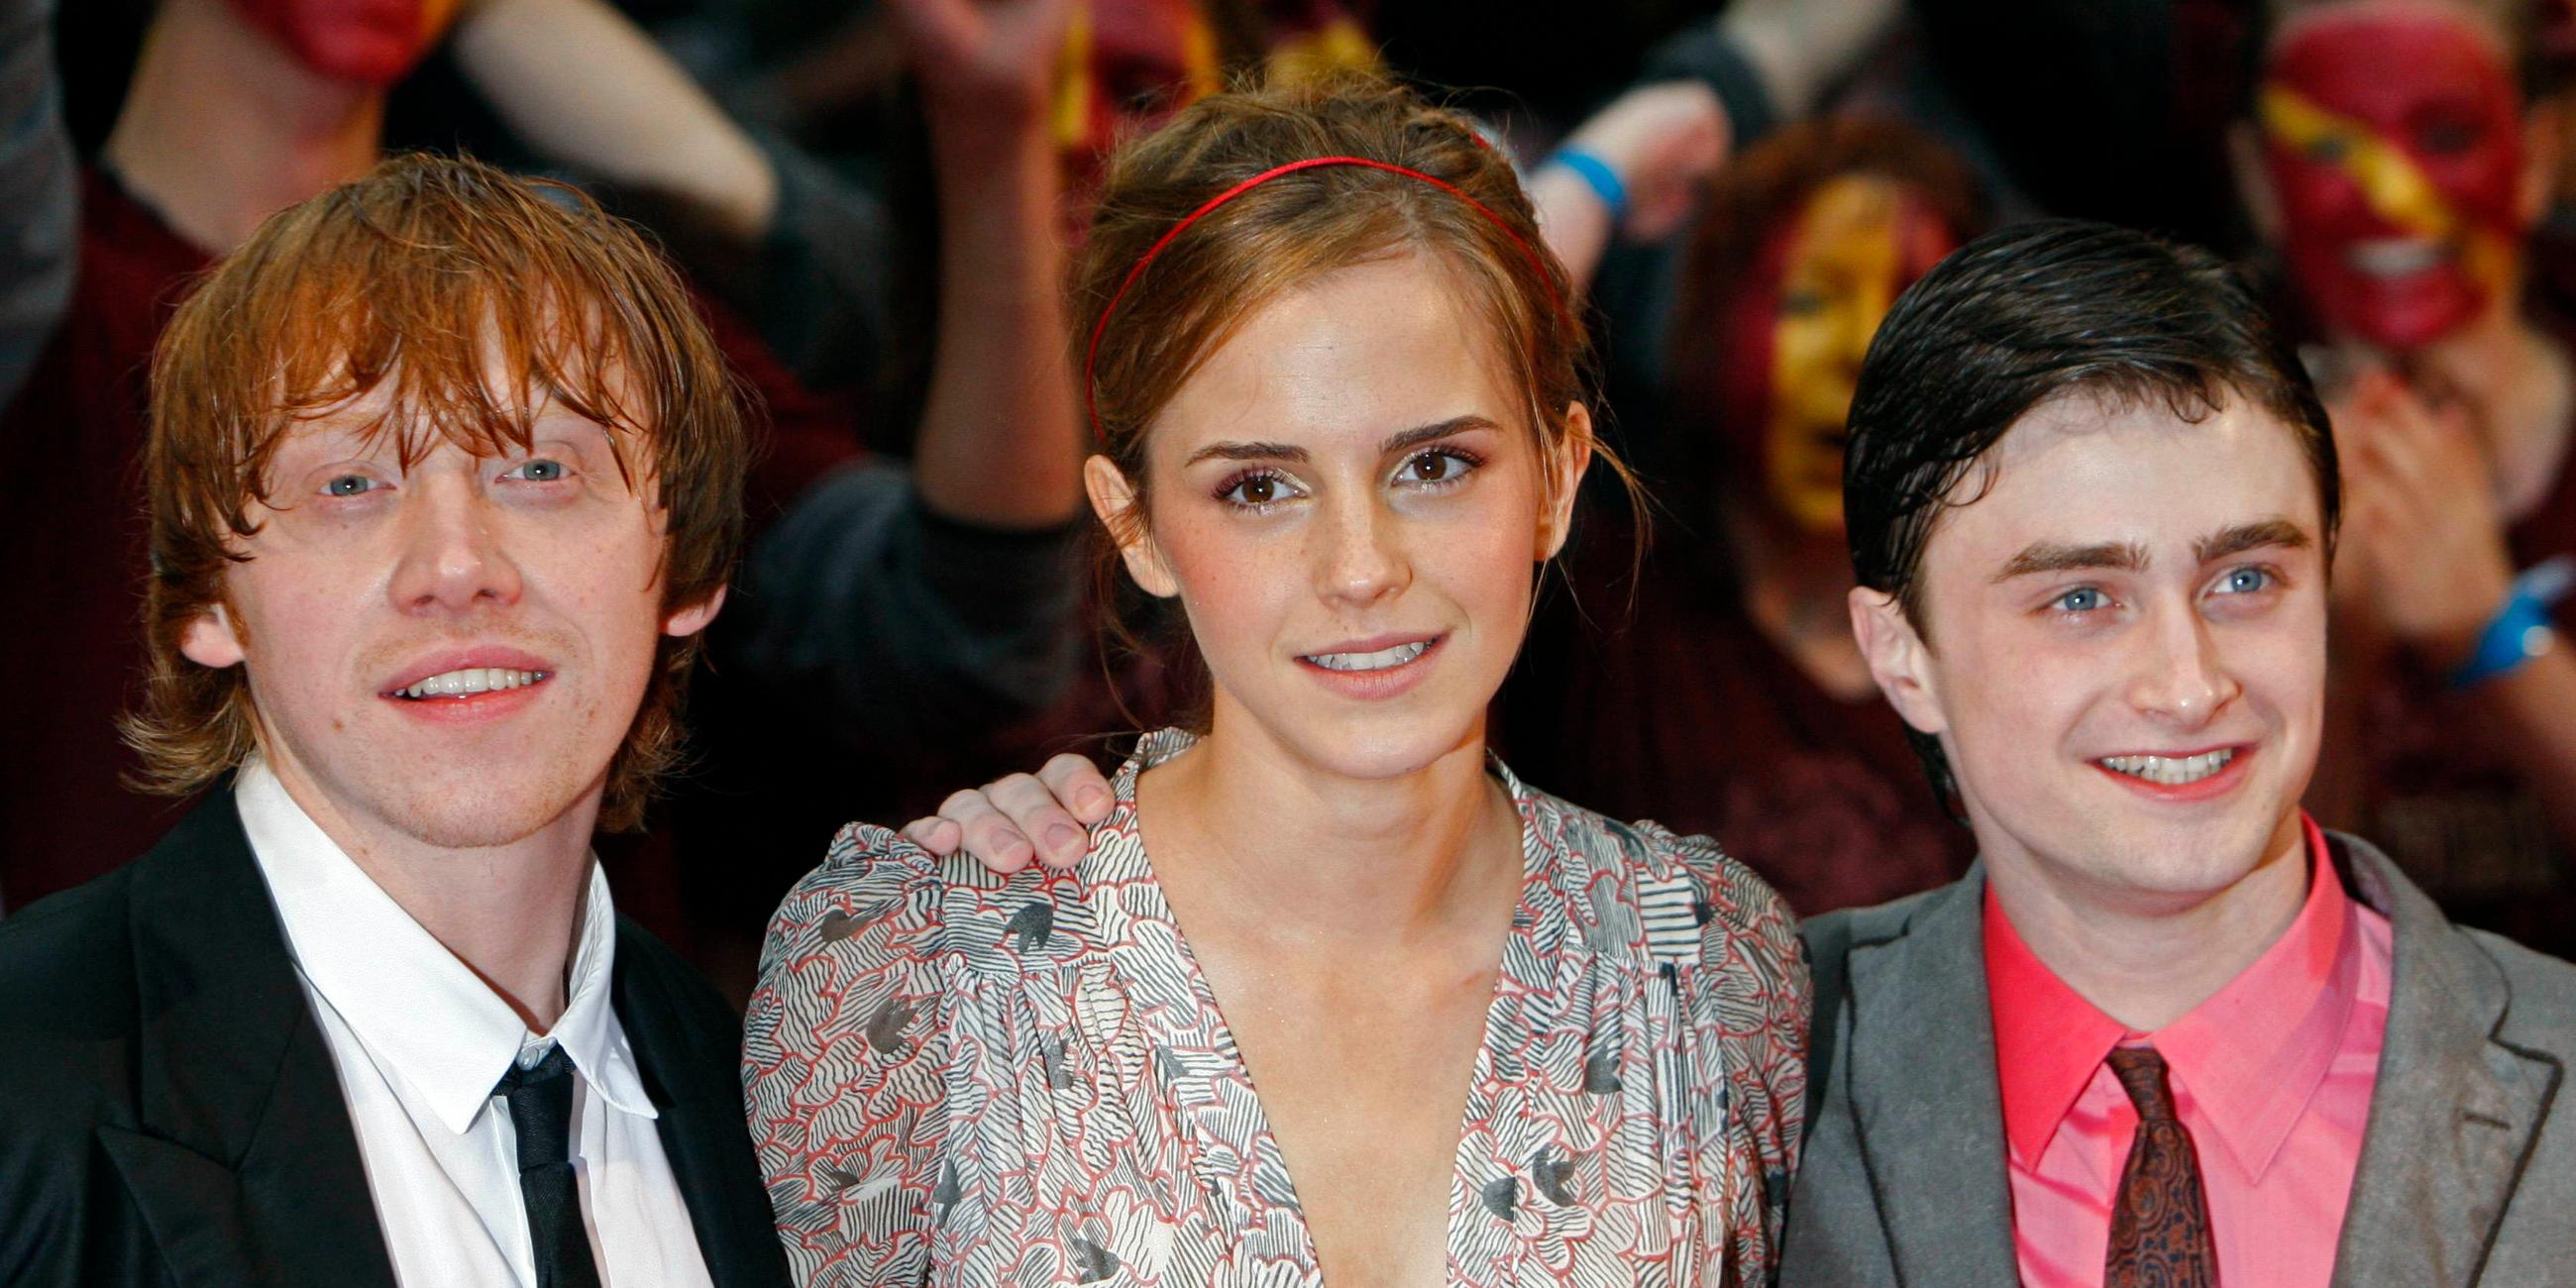 Rupert Grint, Emma Watson und Daniel Radcliffe bei der Premiere von "Harry Potter und der Halbblutprinz" - 2009